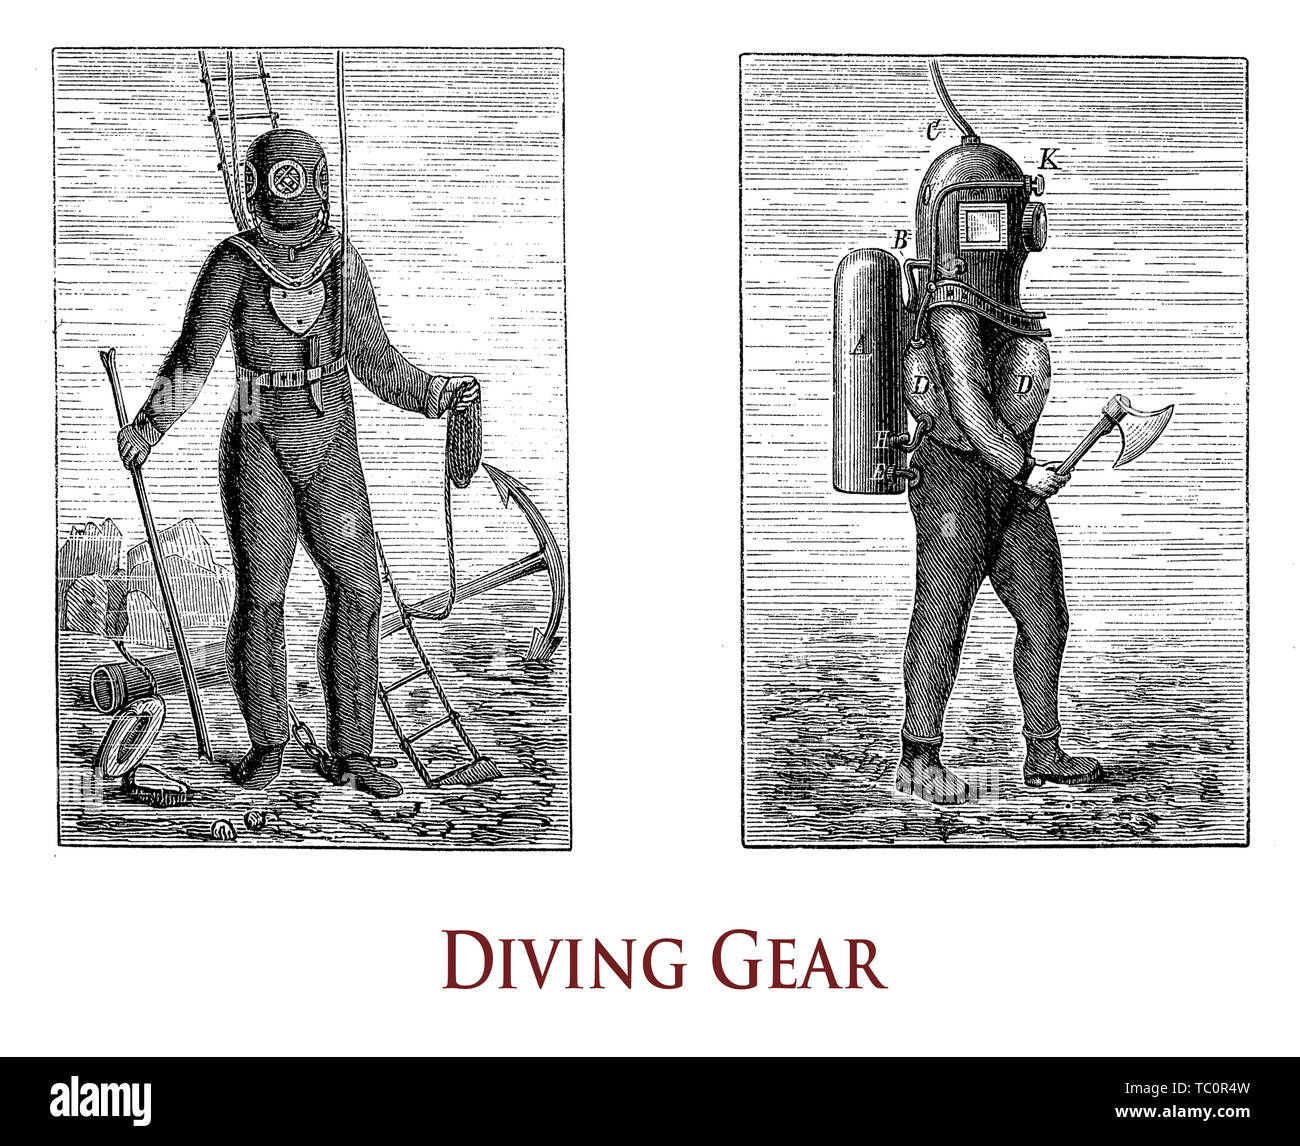 Vintage illustration décrivant l'équipement de plongée sous-marine pour travailler confortablement Banque D'Images